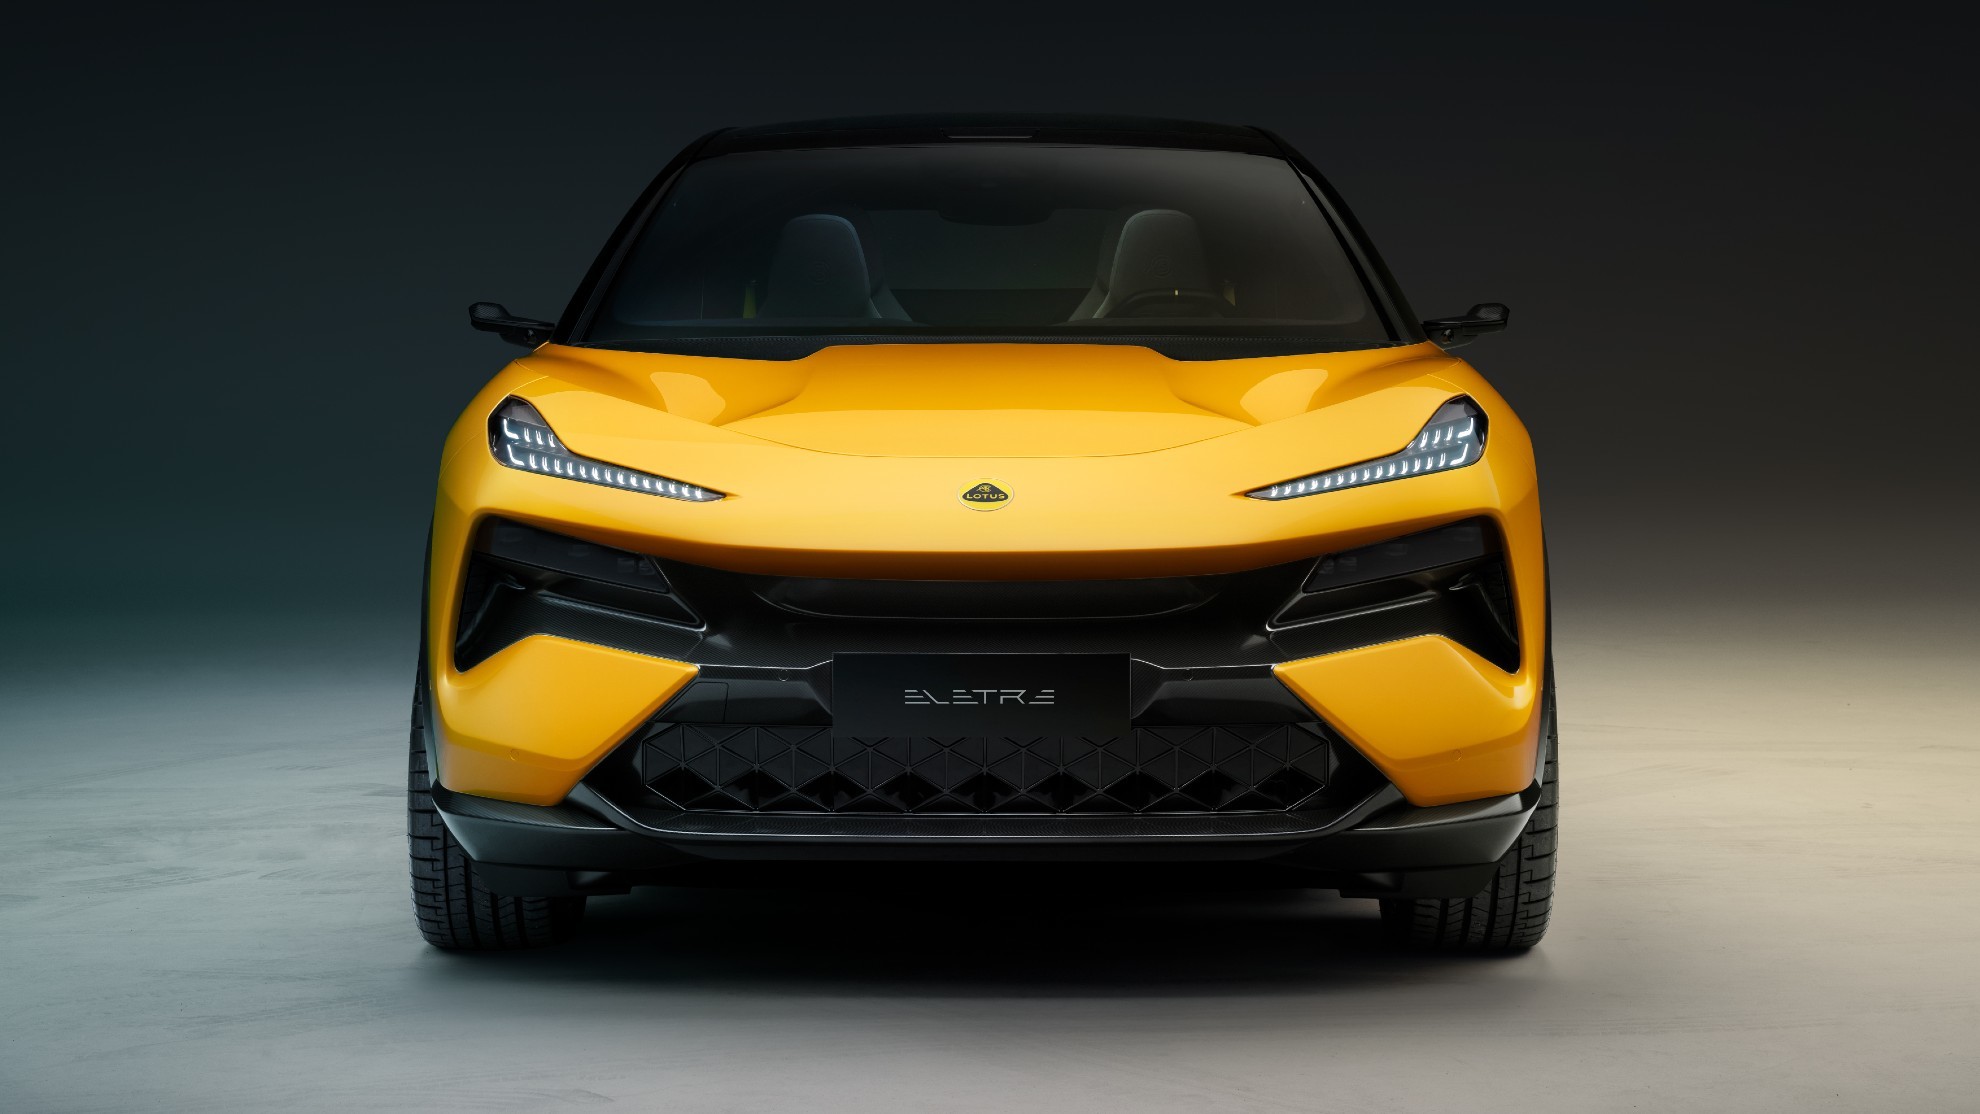 Lotus Eletre - hyper SUV - todocamino - Lamborghini Urus - LIDAR - Hethel - SUV deportivo - coches electricos